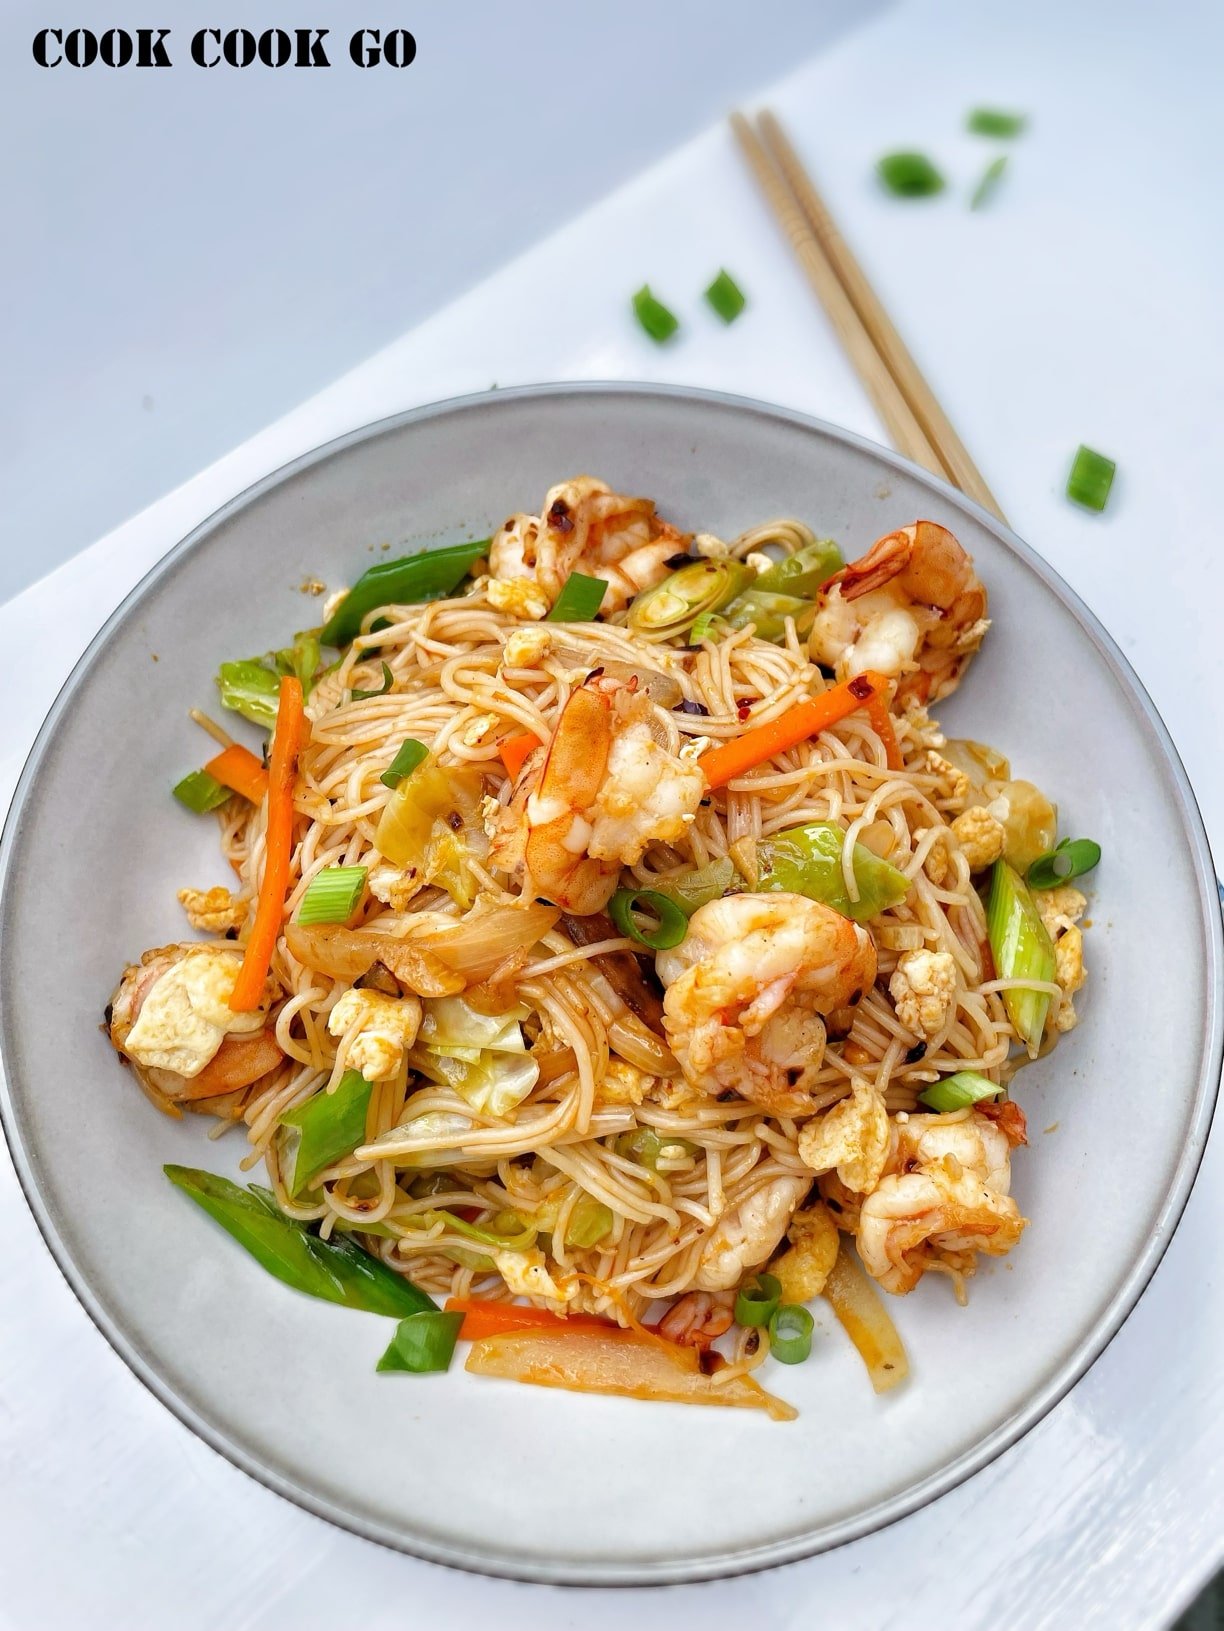 Stir fry shrimp rice noodles with vegetables